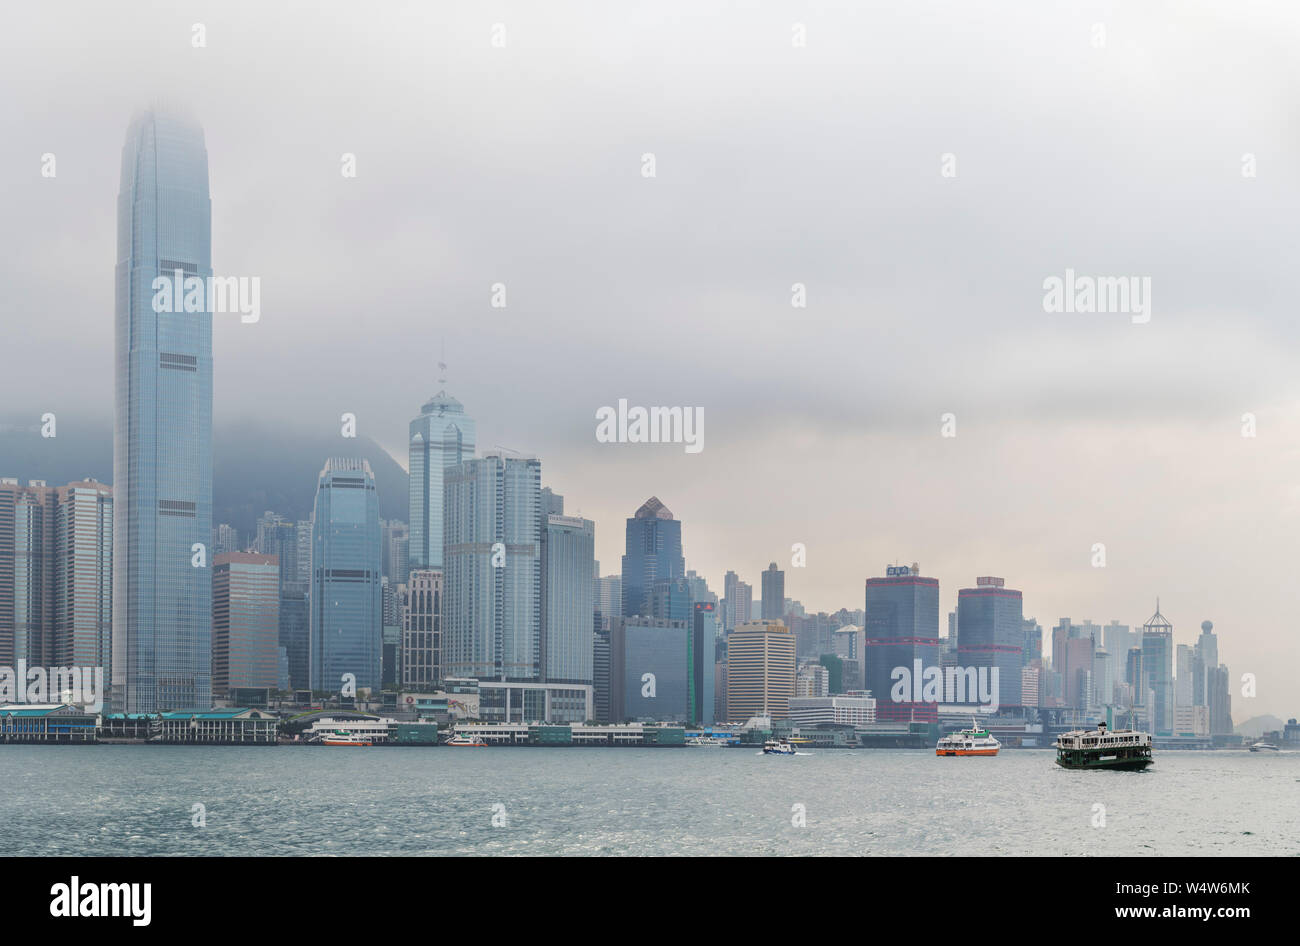 Hong Kong Harbour with Two International Finance Centre and Central skyline behind, Hong Kong Island, Tsim Sha Tsui, Hong Kong, China Stock Photo